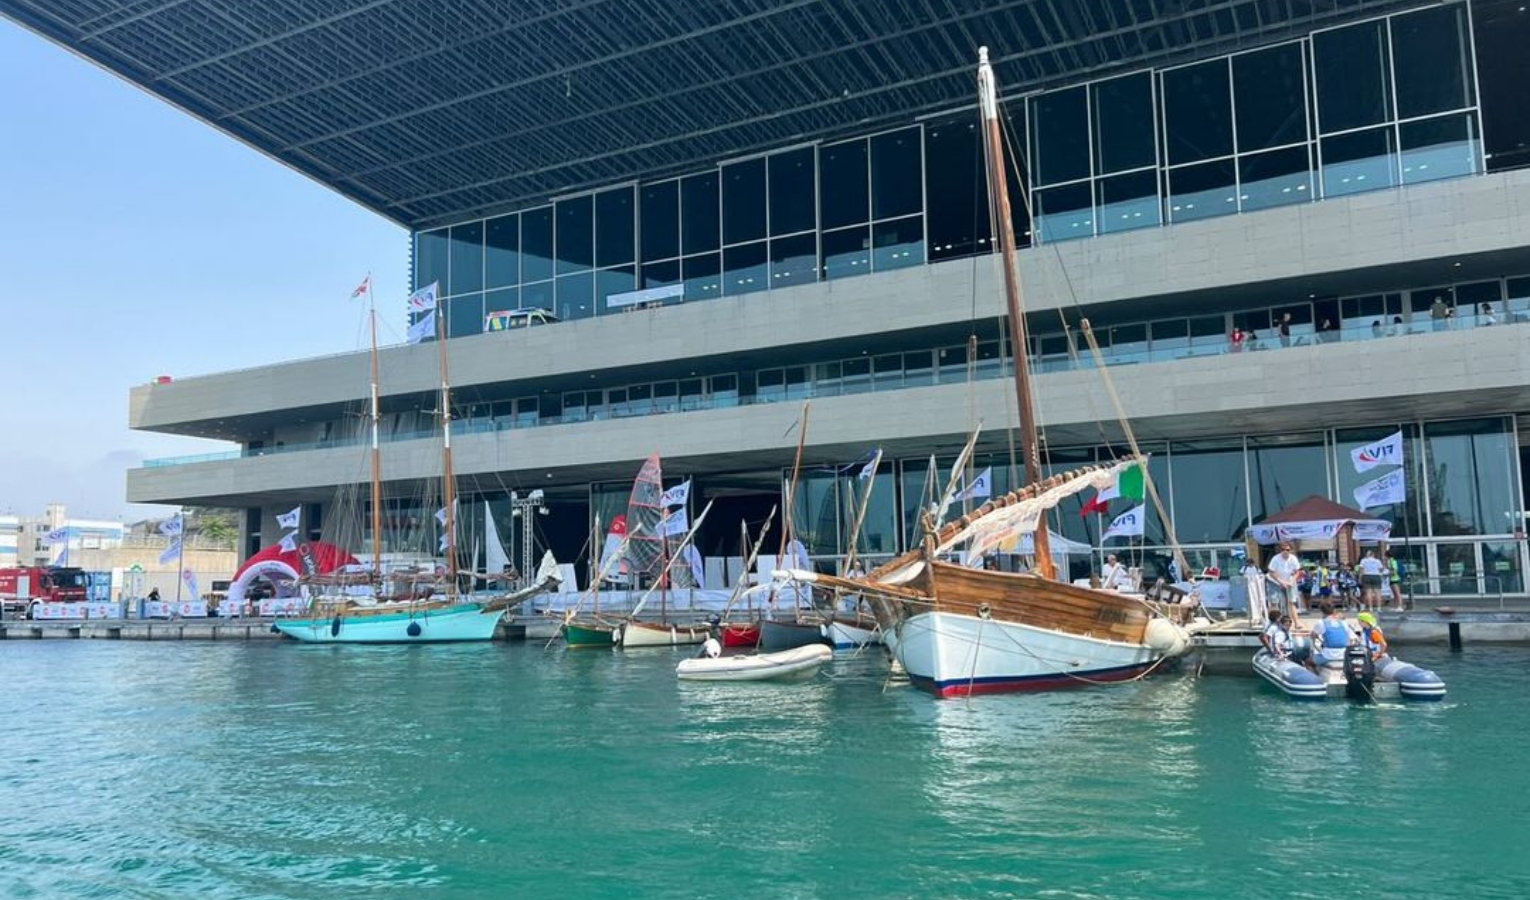 The Ocean Race, giri gratuiti in barca per fotografare Genova da una prospettiva diversa